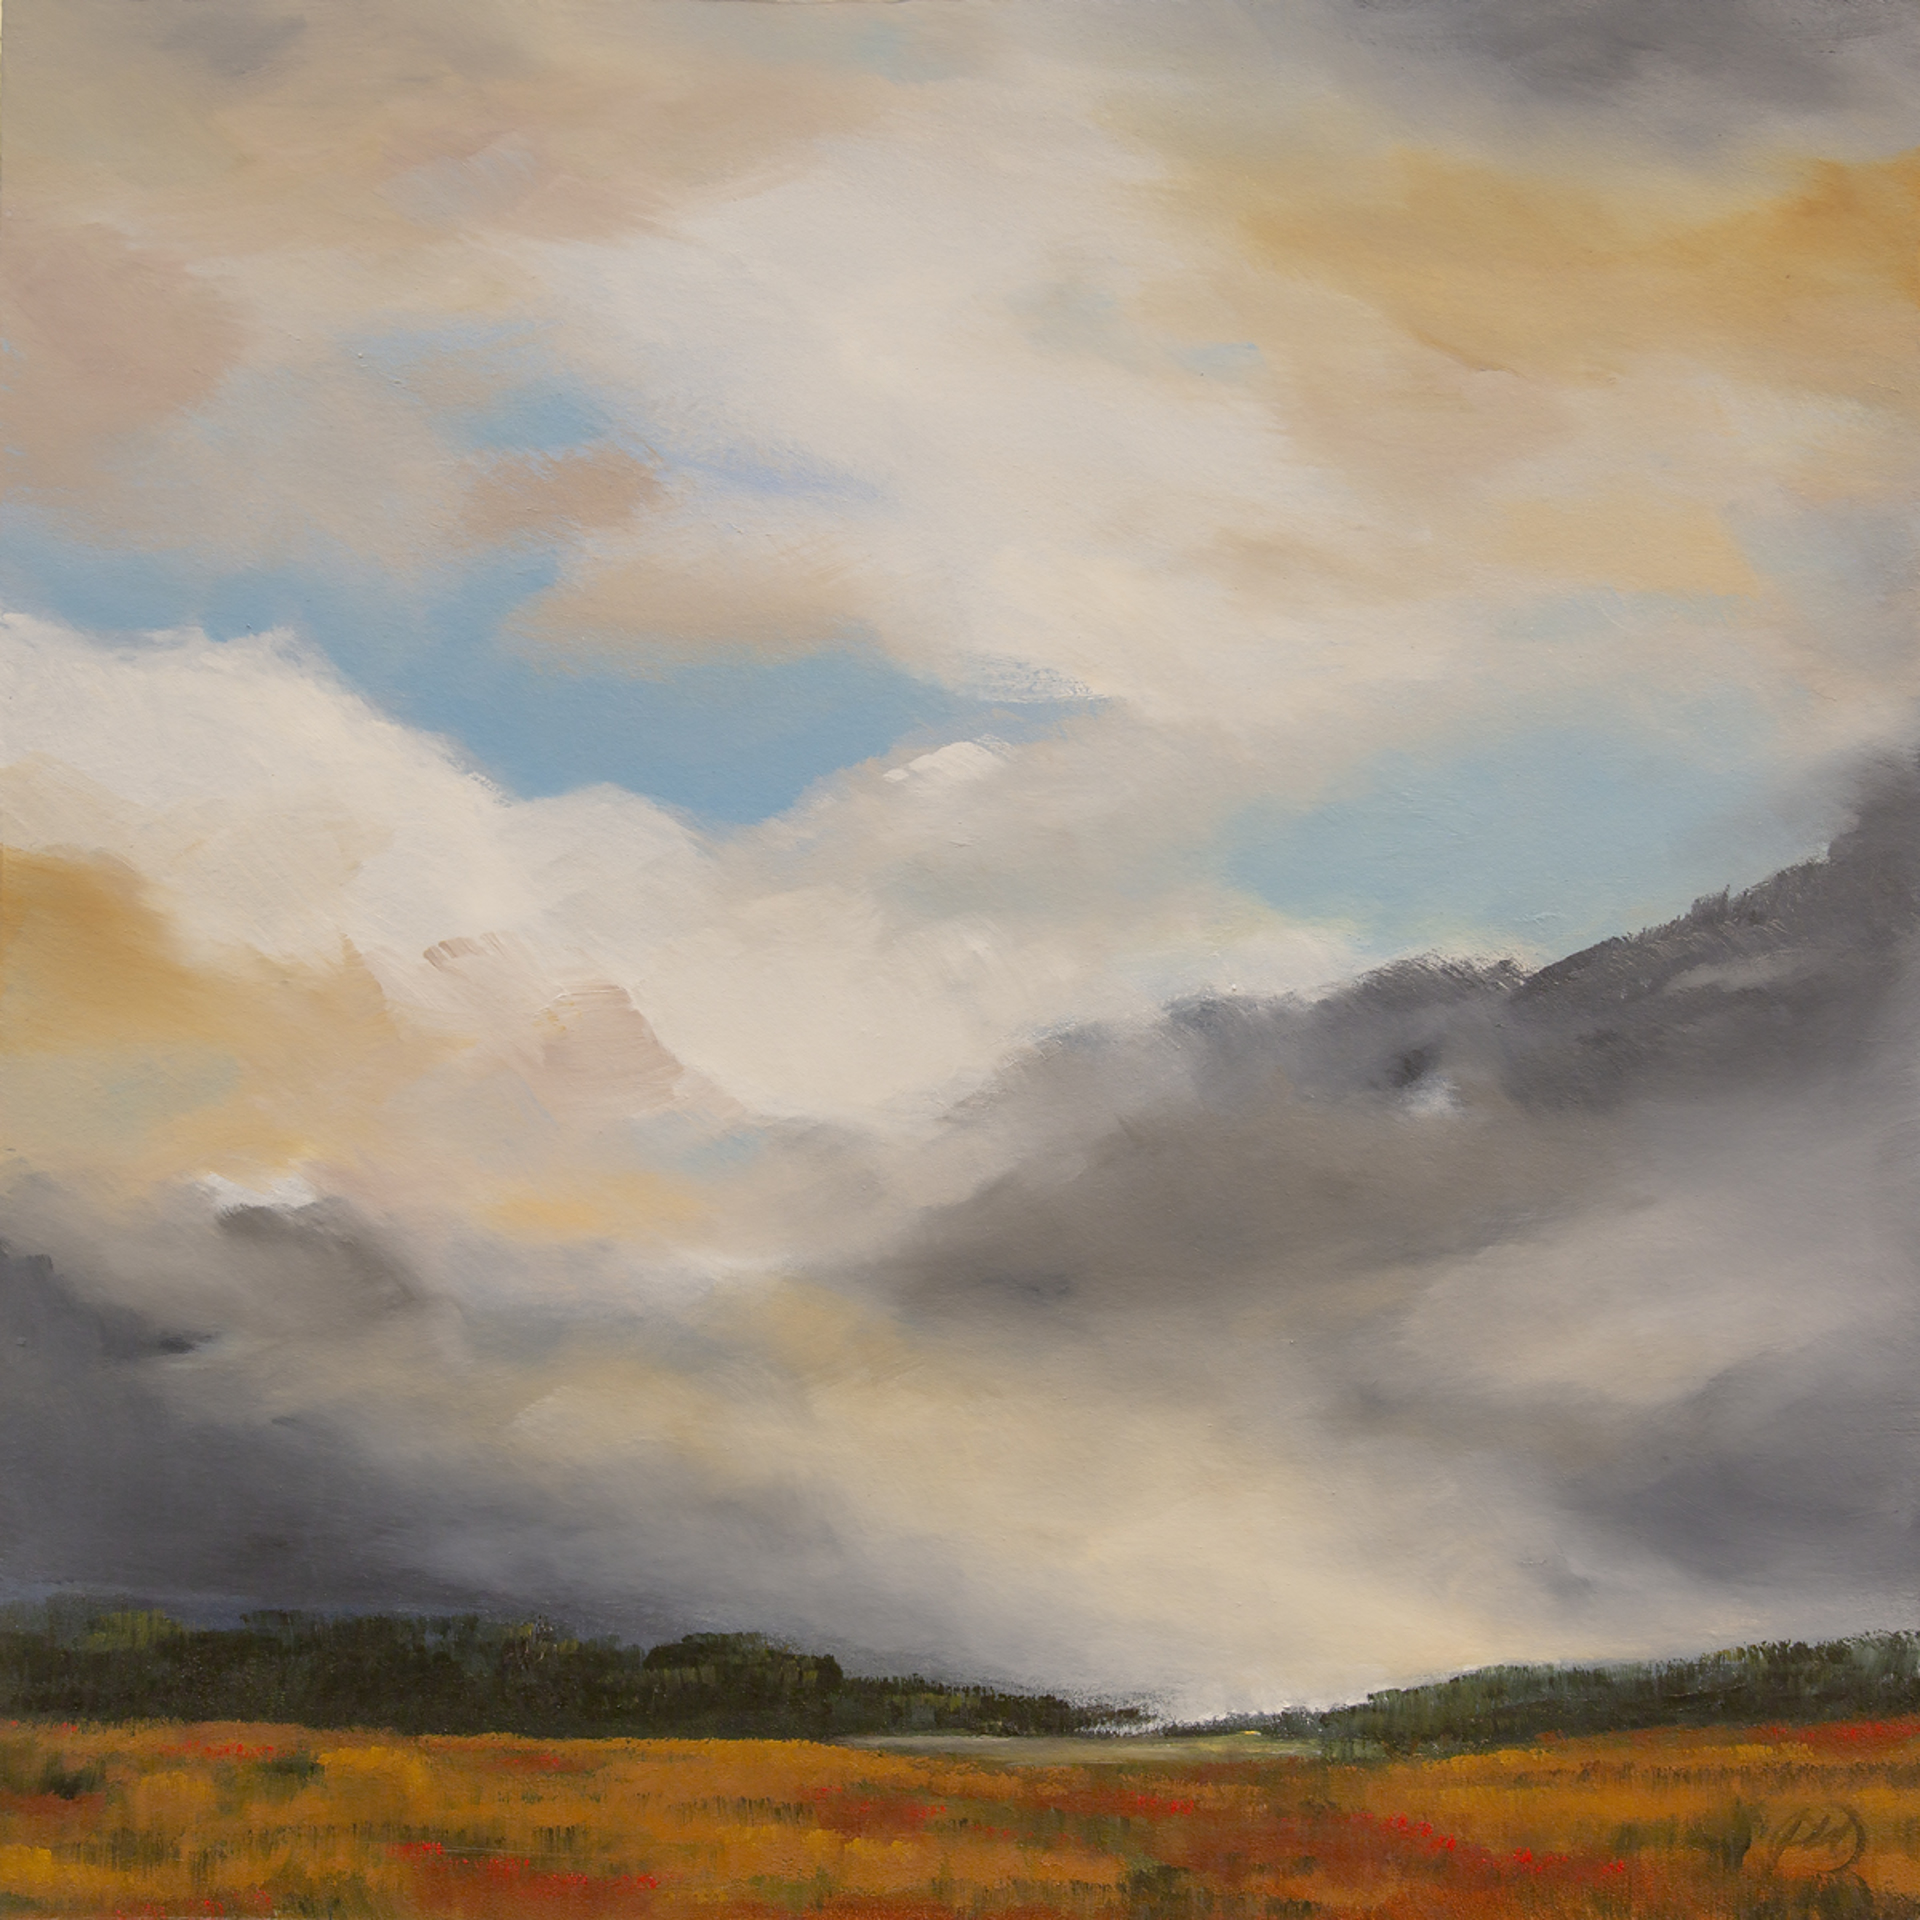 Cloud Break at Dawn by Paula Wallace